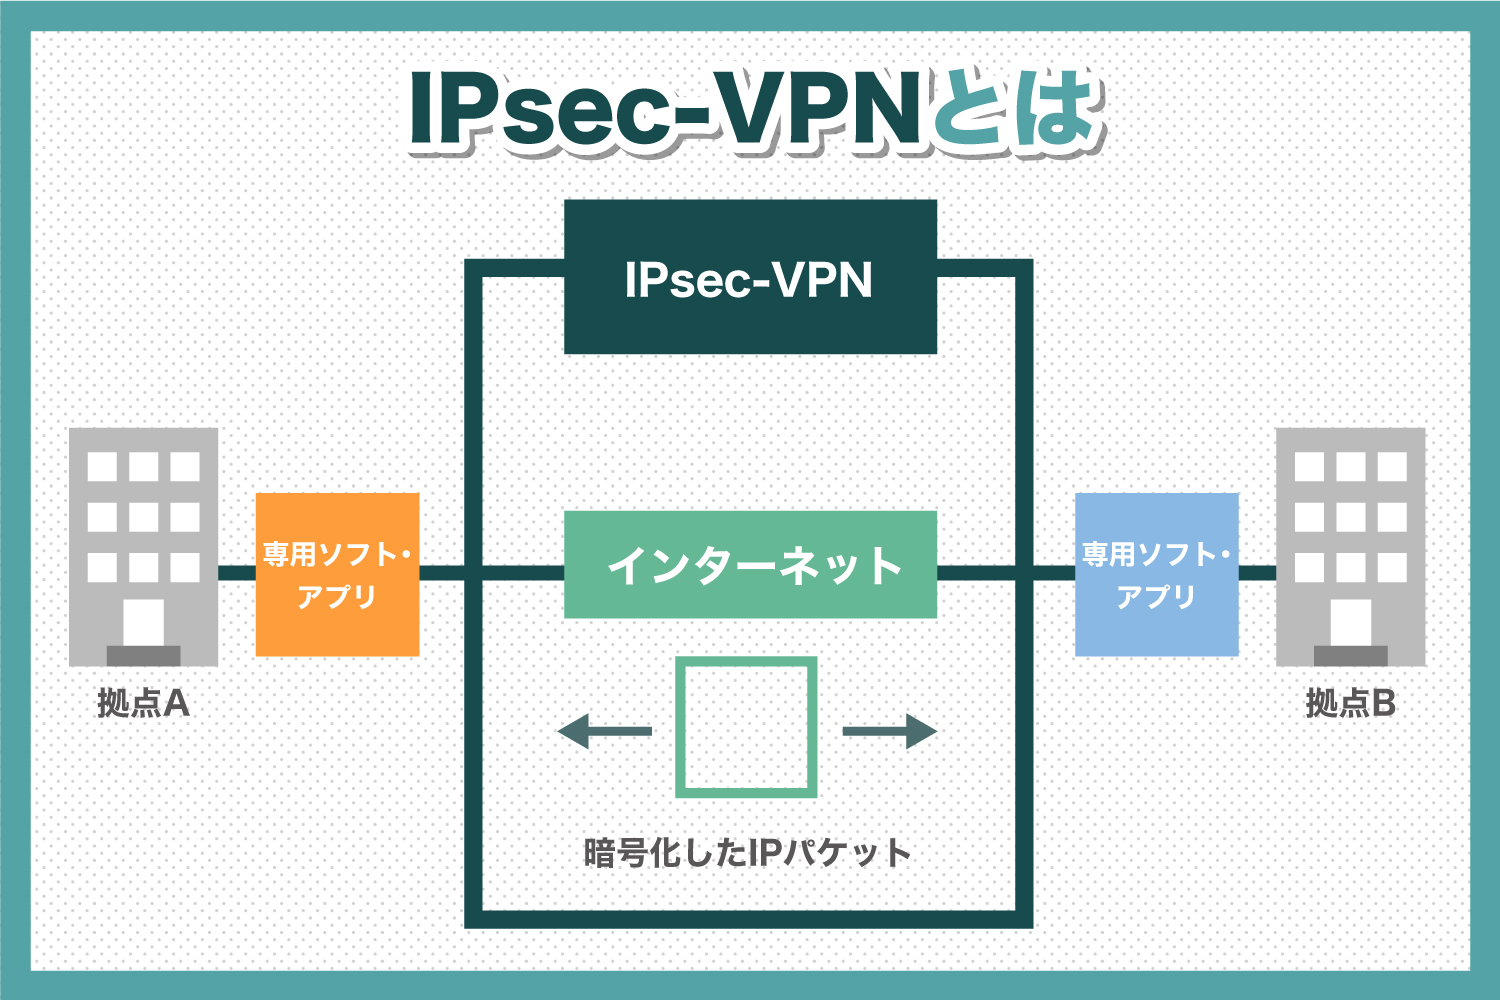 IPsec-VPN